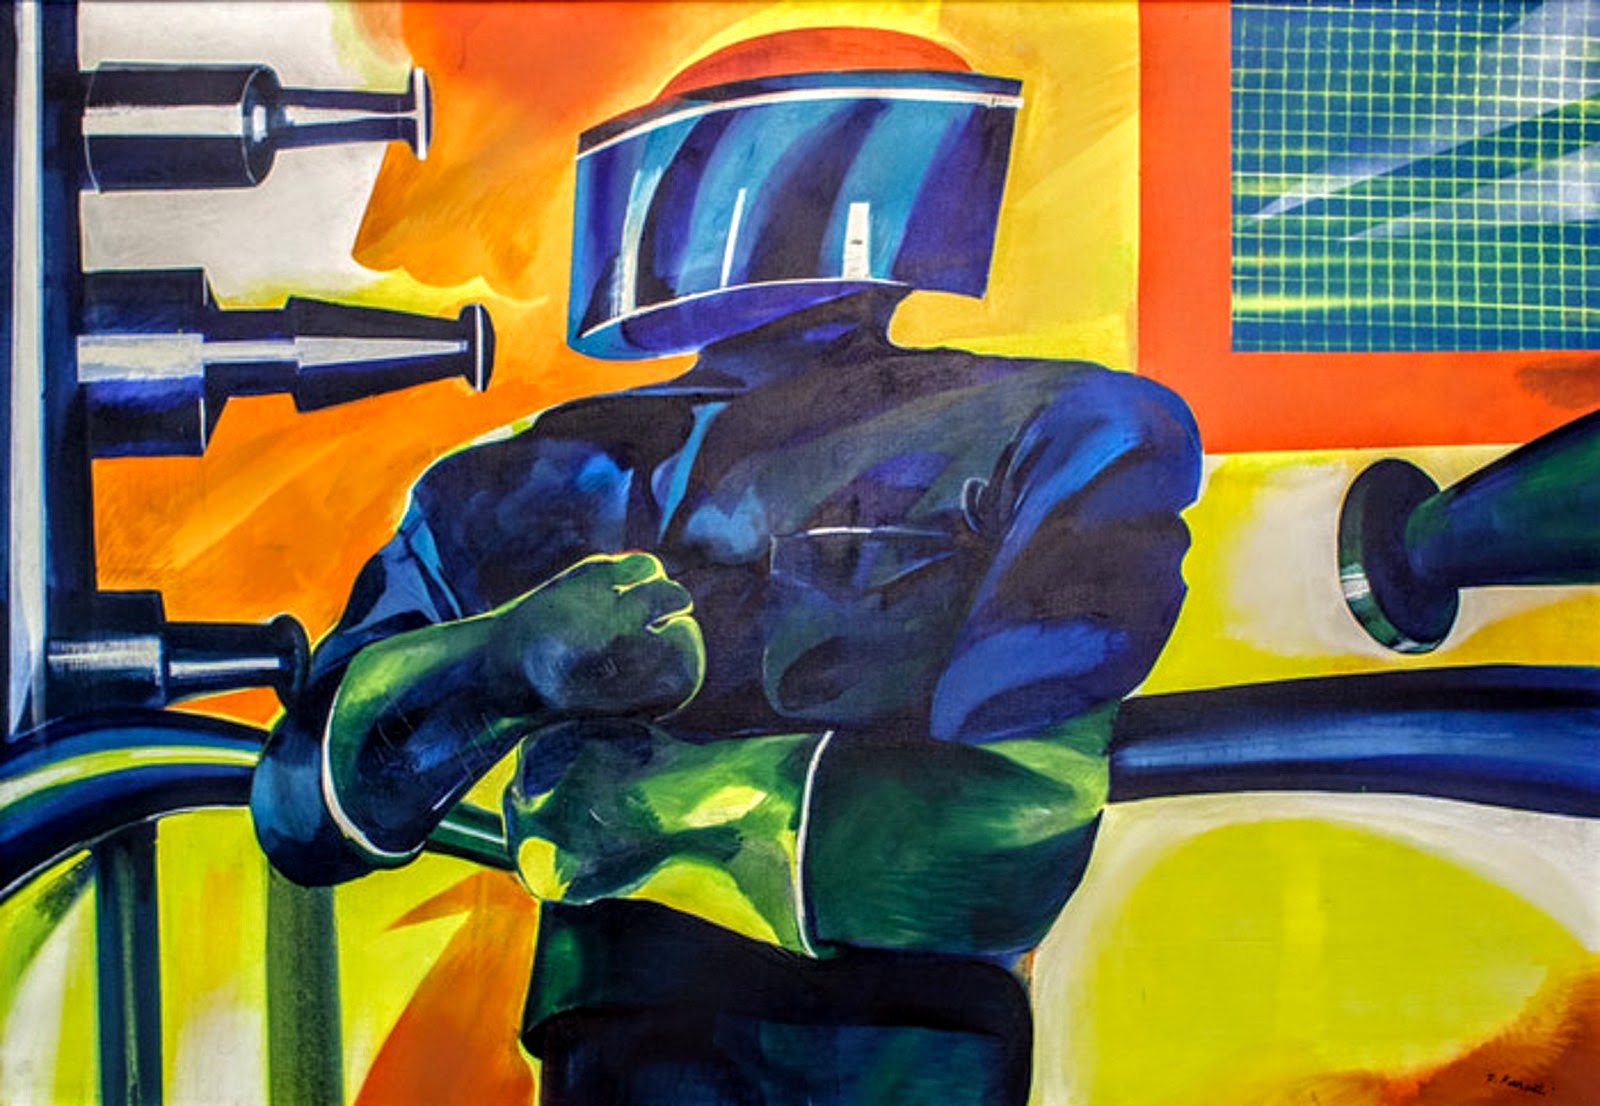 dipinto che raffigura un uomo-robot dai colori accesi in fabbrica